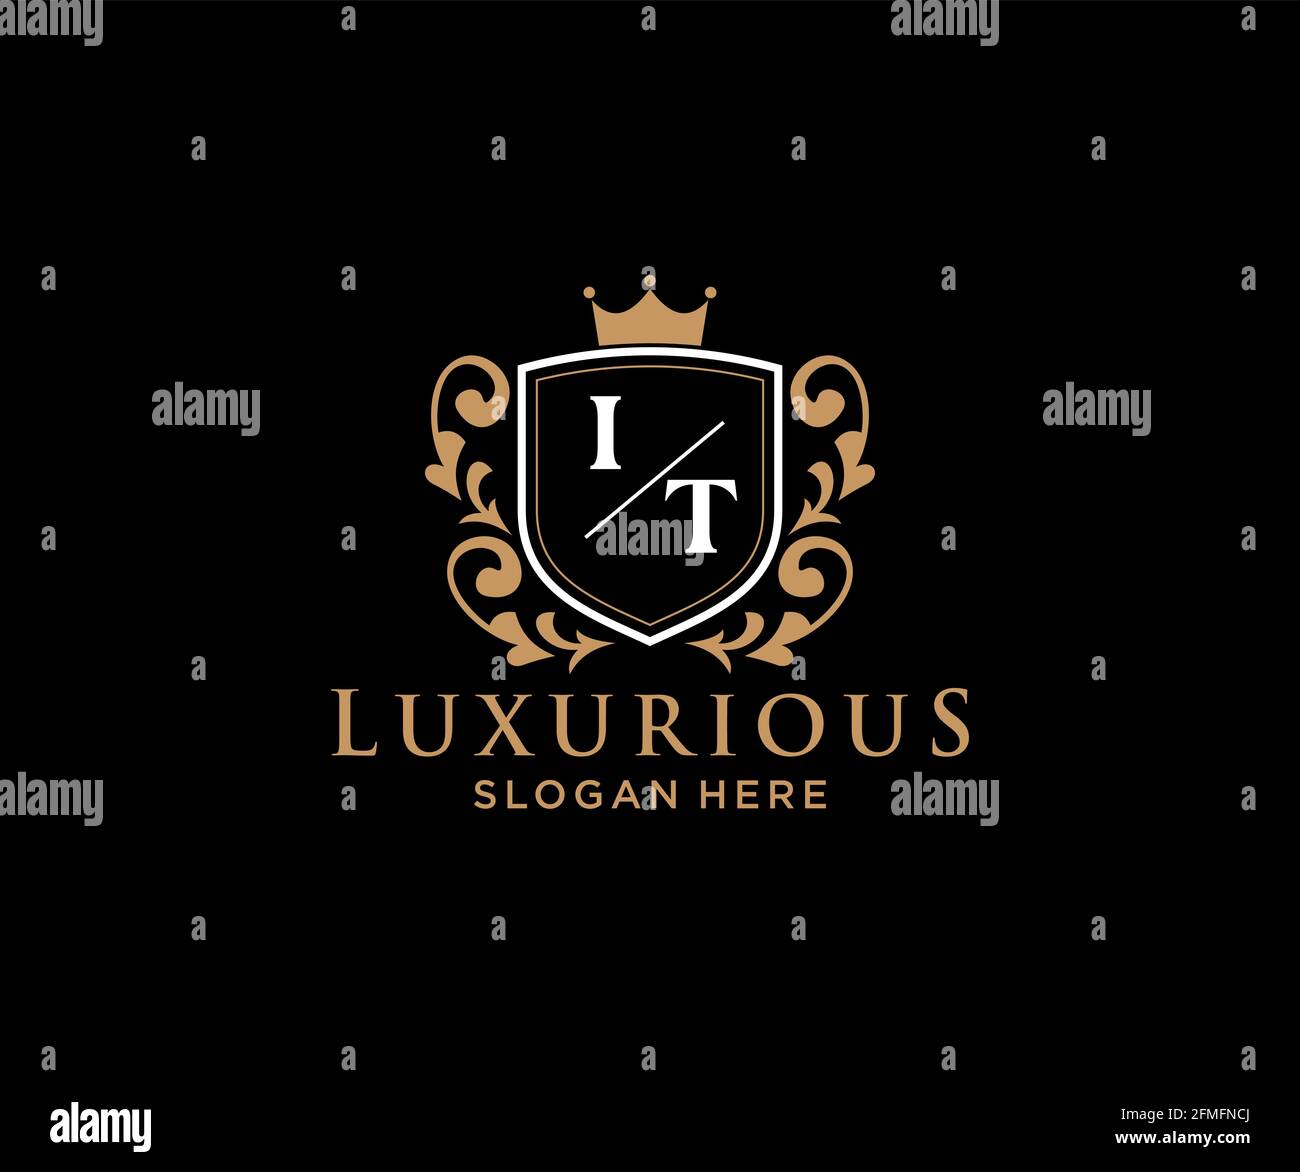 IT Letter Royal Luxury Logo Vorlage in Vektorgrafik für Restaurant, Royalty, Boutique, Cafe, Hotel, Heraldisch, Schmuck, Mode und andere Vektor illustrr Stock Vektor